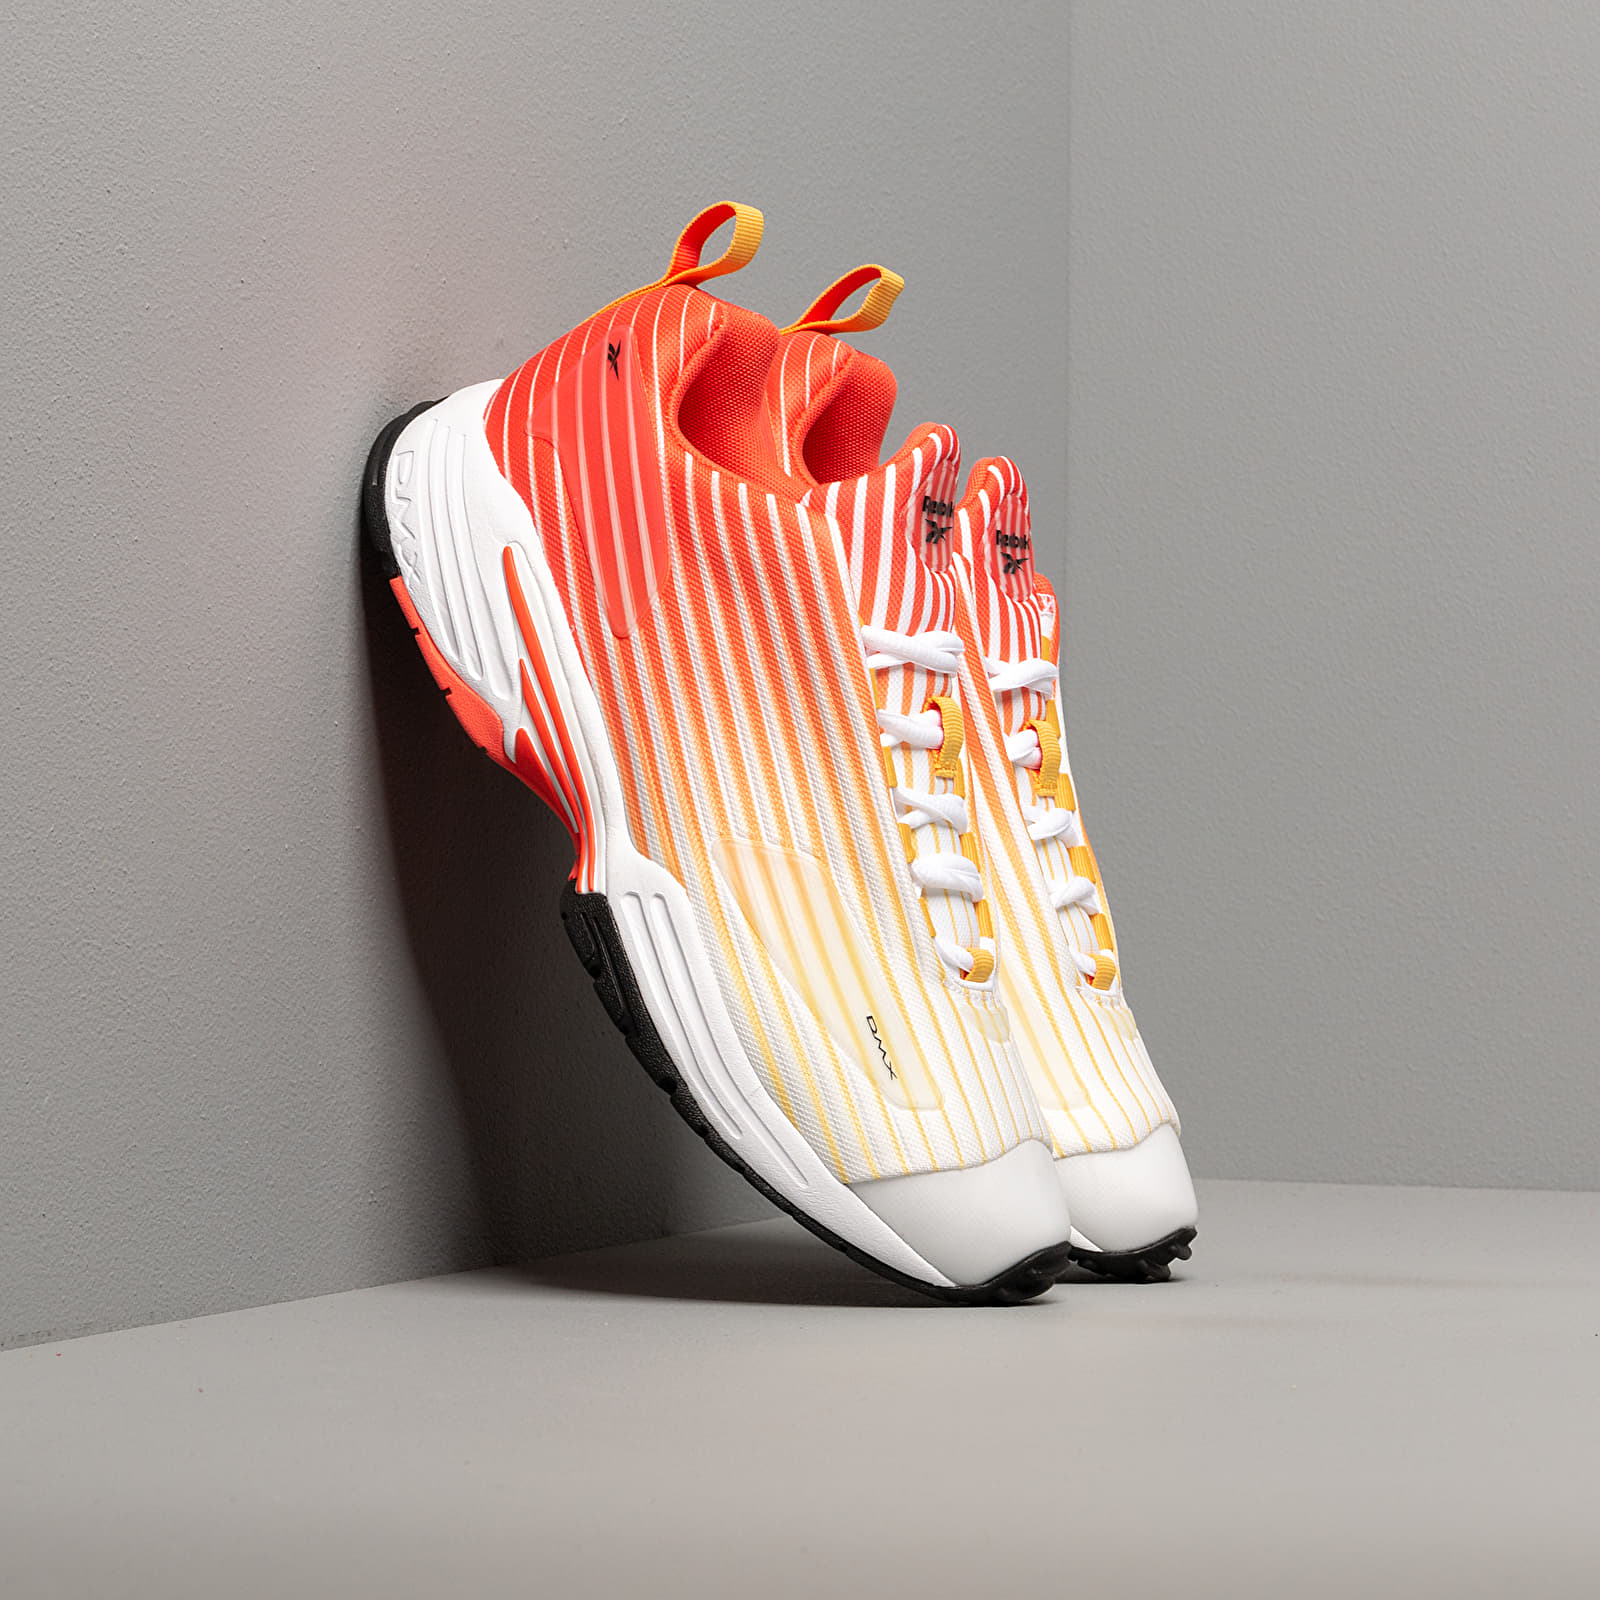 Men's shoes Reebok DMX Thrill Vivid Orange/ White/ Fierce Gold